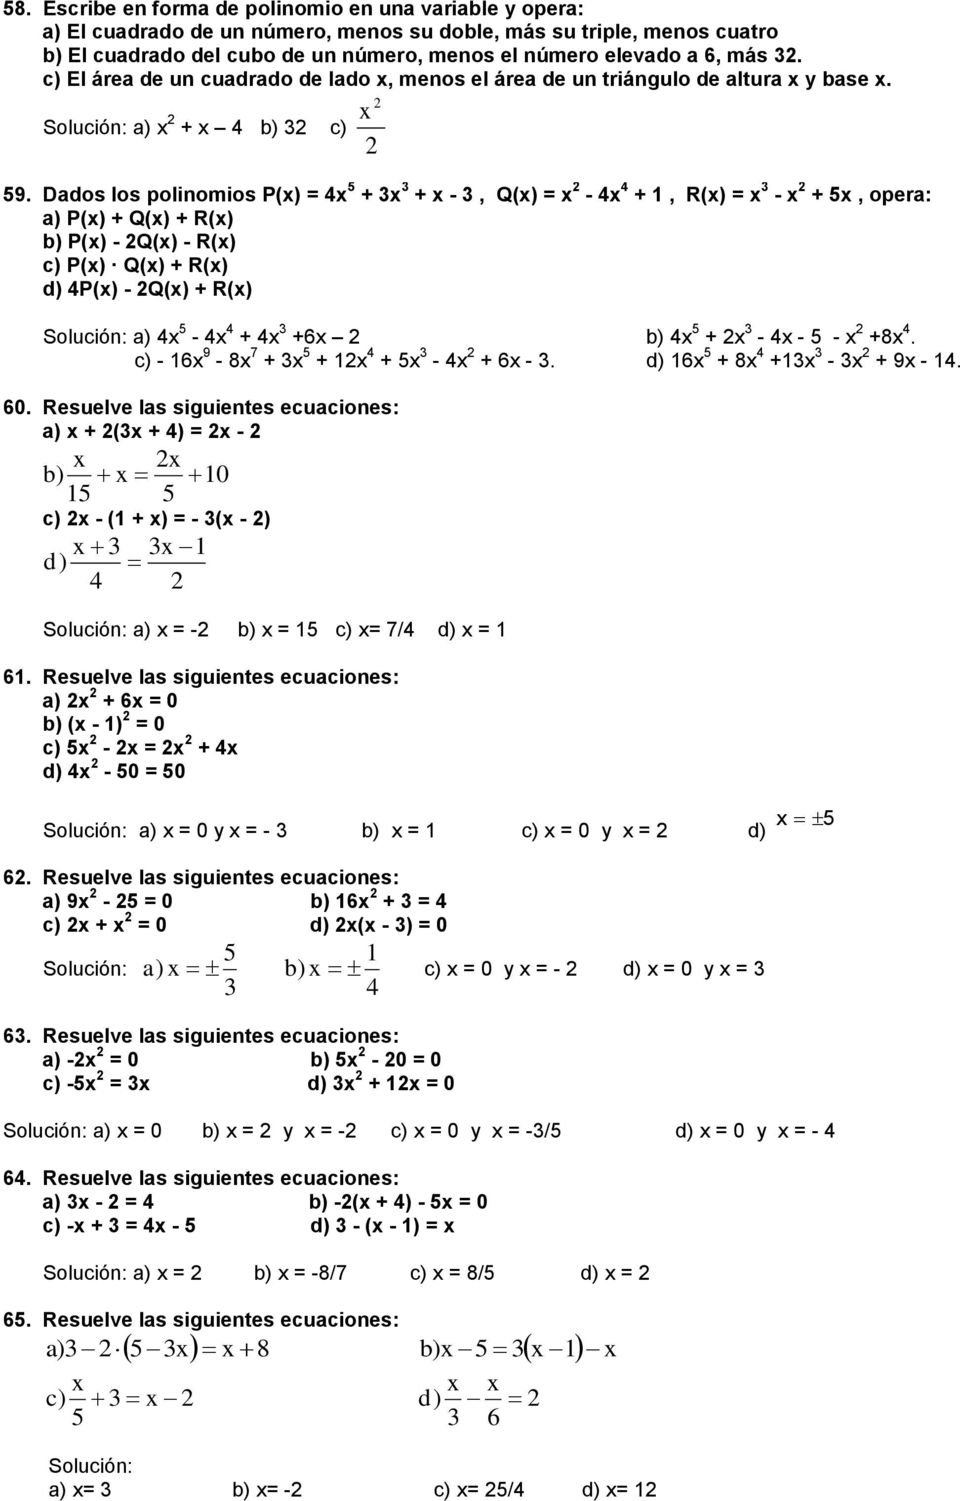 Dados los polinomios P(x) = x + x + x - Q(x) = x - x + R(x) = x - x + x opera: a) P(x) + Q(x) + R(x) P(x) - Q(x) - R(x) c) P(x) Q(x) + R(x) d) P(x) - Q(x) + R(x) a) x - x + x +6x x + x - x - - x +8x.